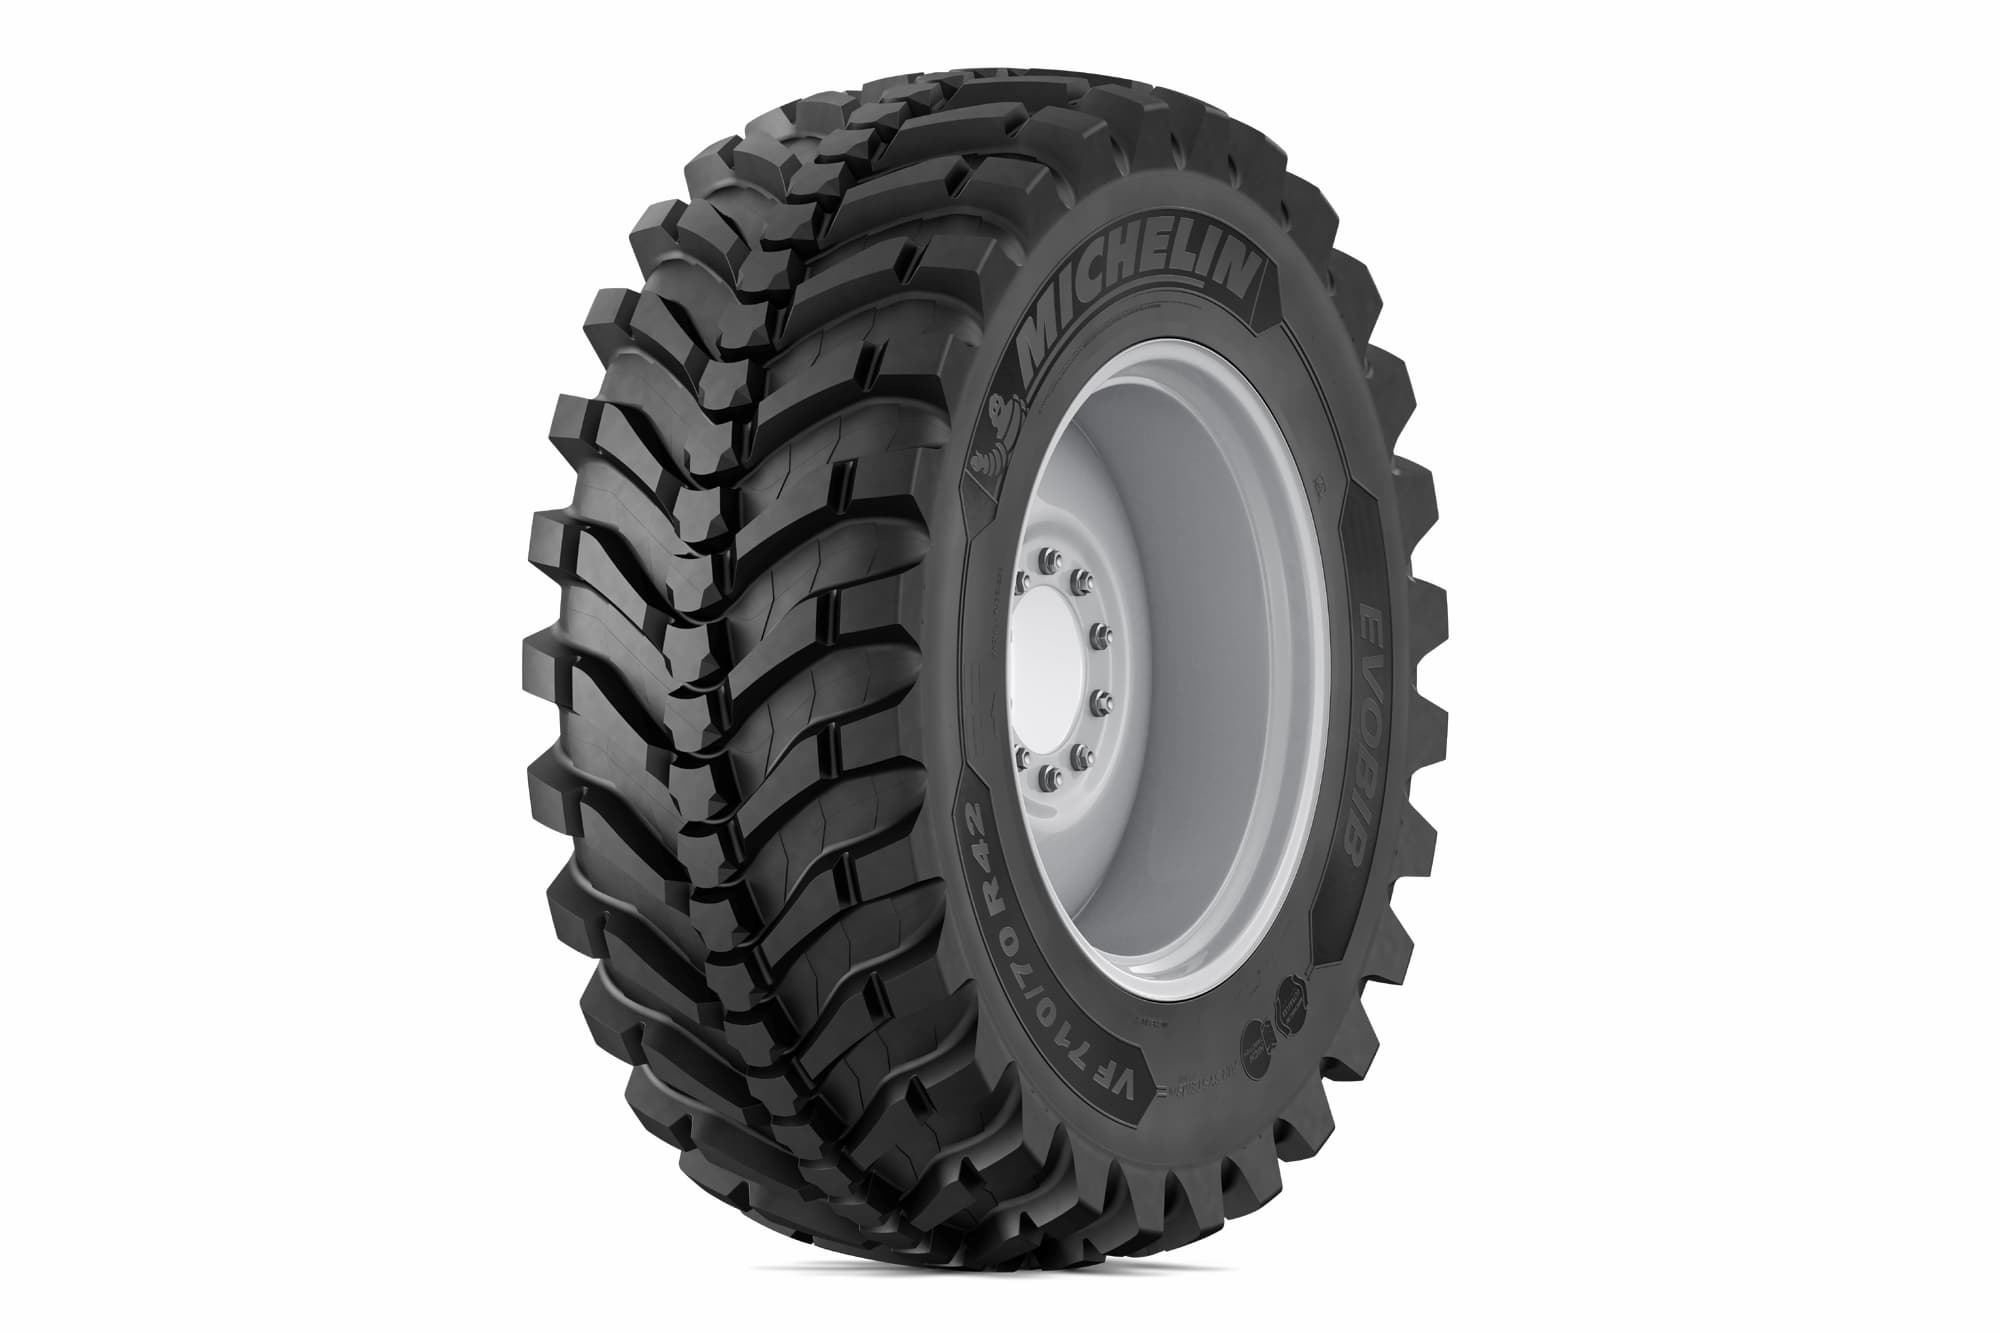 Los neumáticos agrícolas Michelin Evobib 2